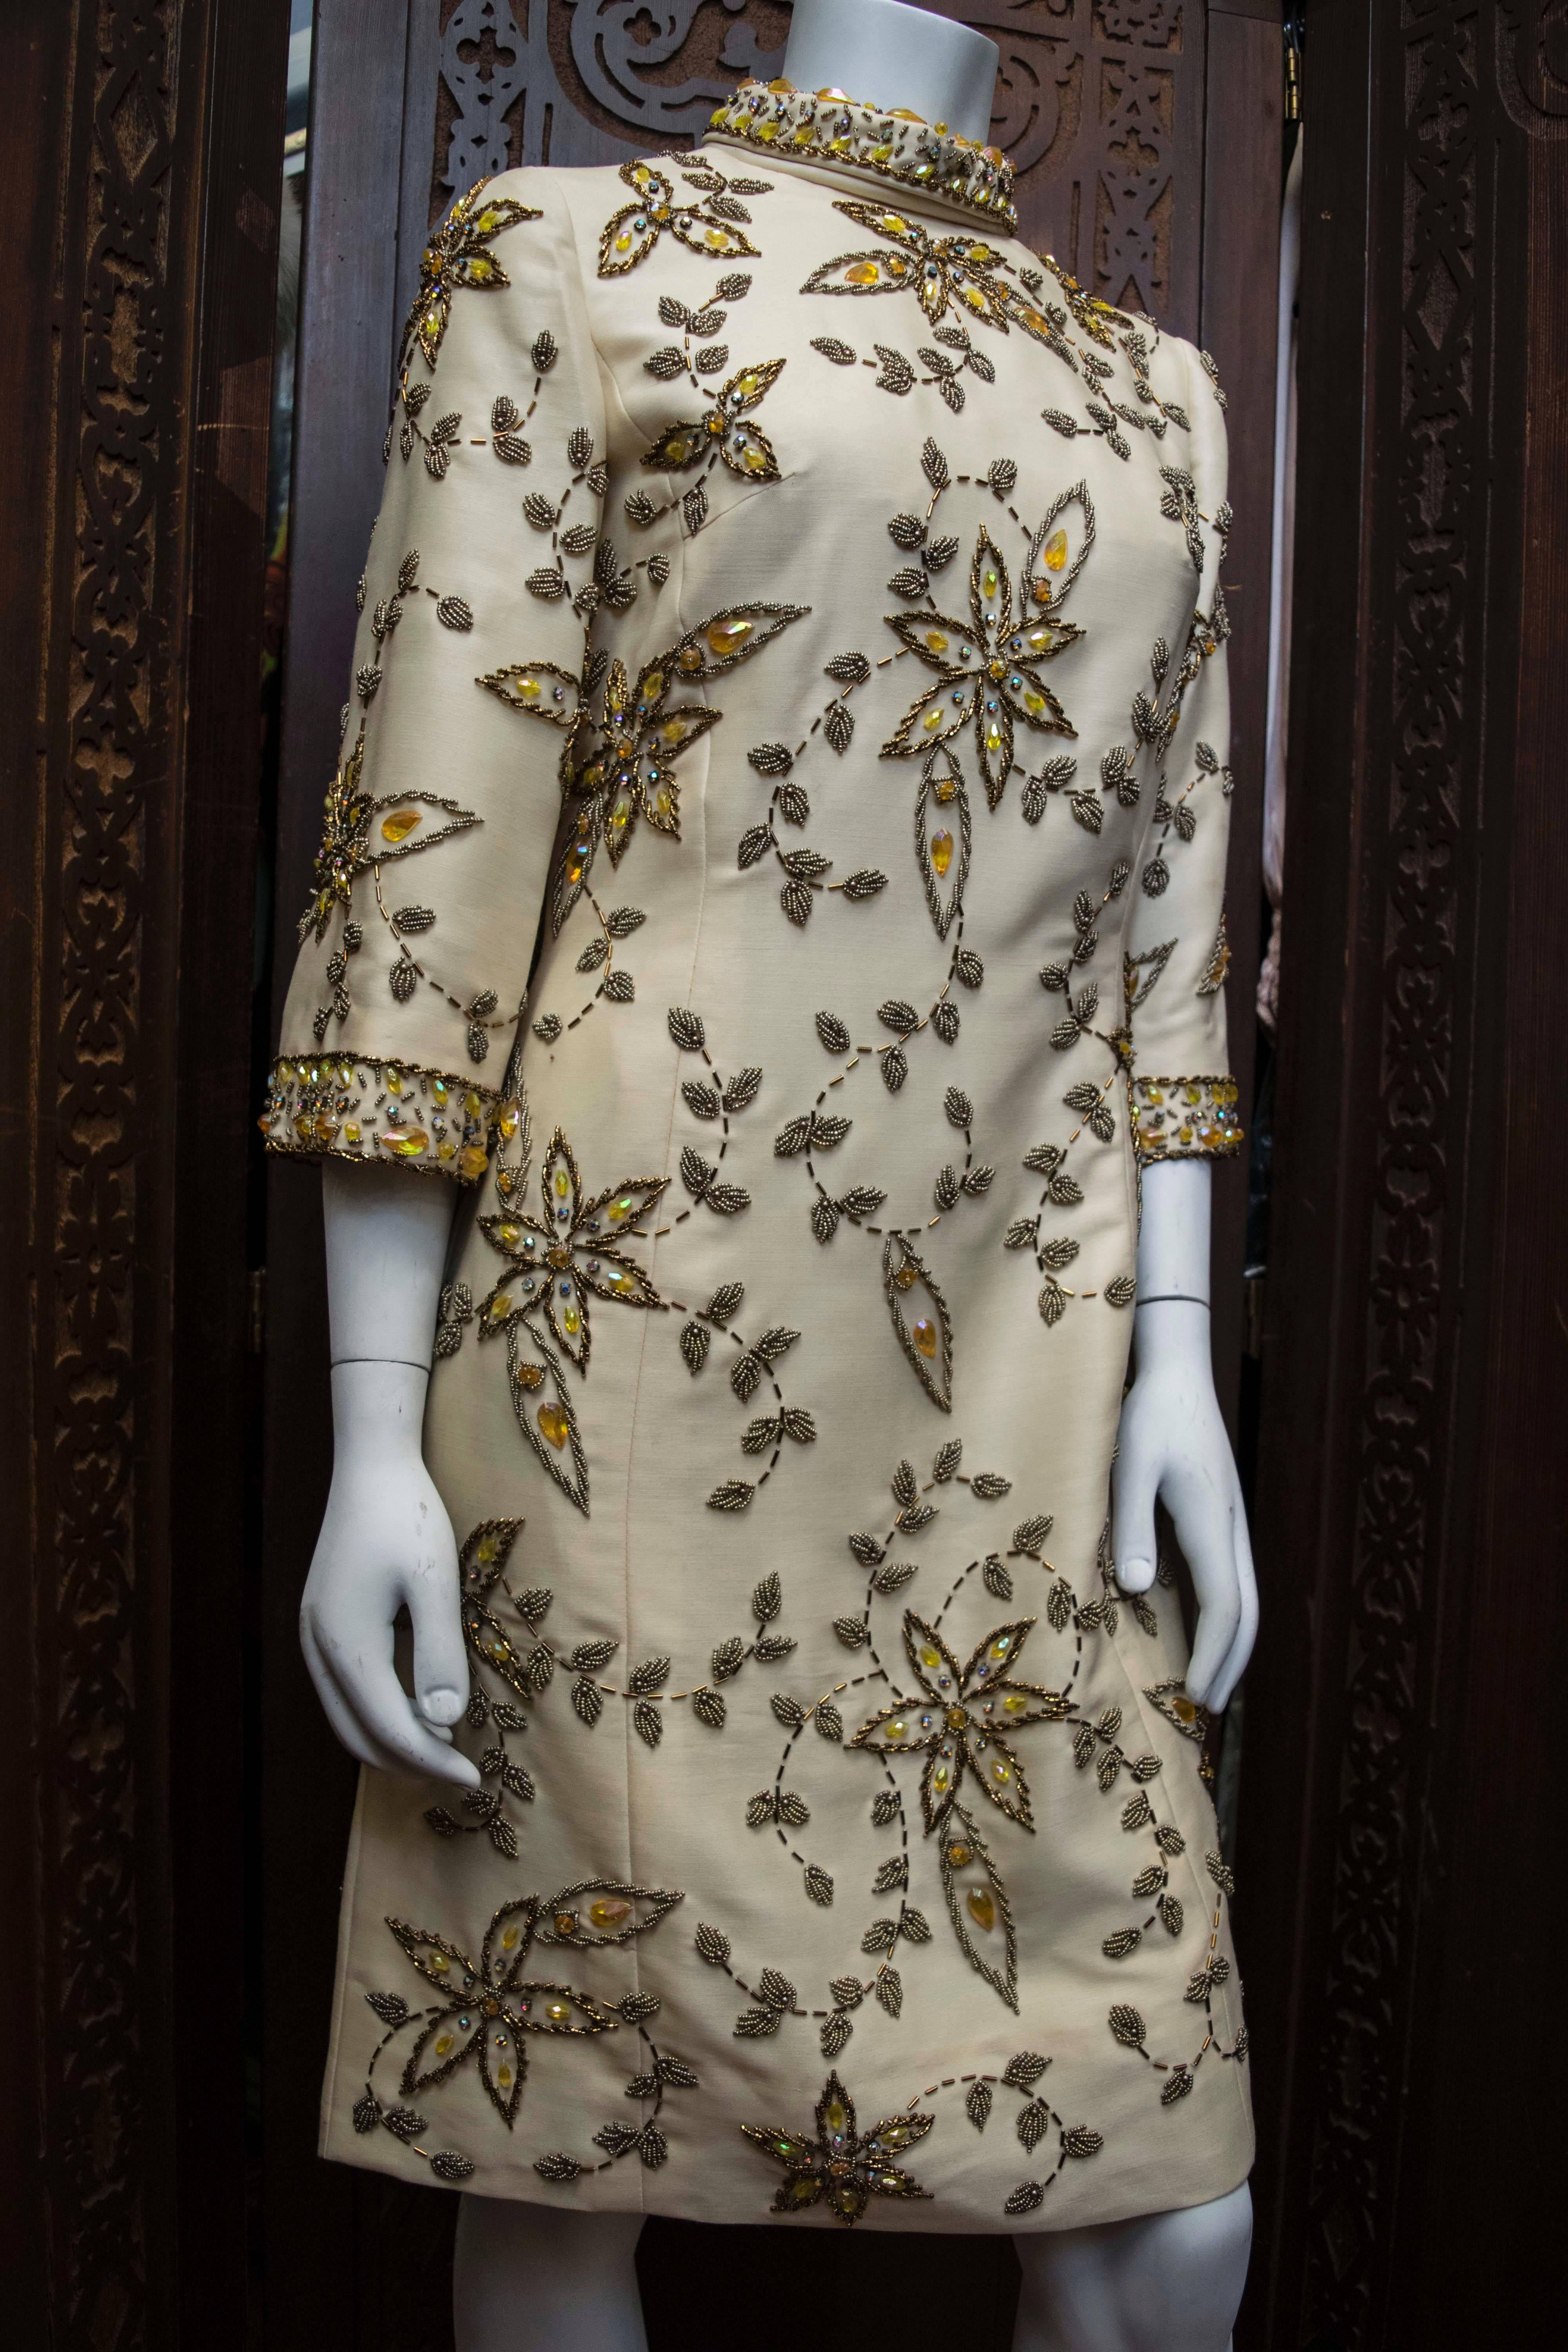 robe crème perlée à la main des années 1960

B 36
W 32
H 38
L 39